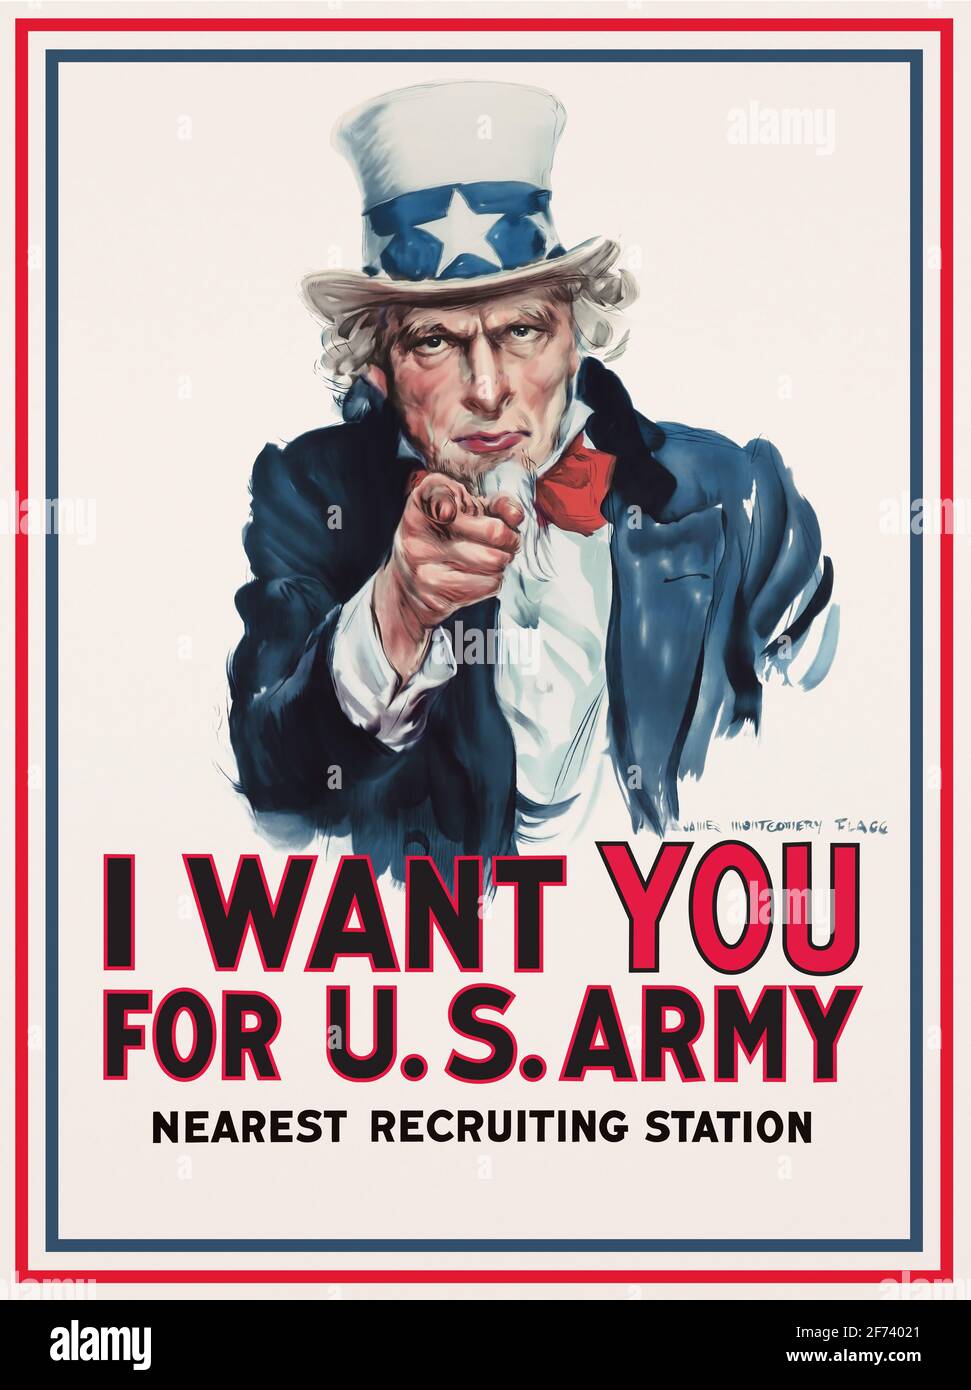 United States America zio Sam mascotte classico esercito di guerra reclutando poster militare, storia del patrimonio americano alta risoluzione Foto Stock